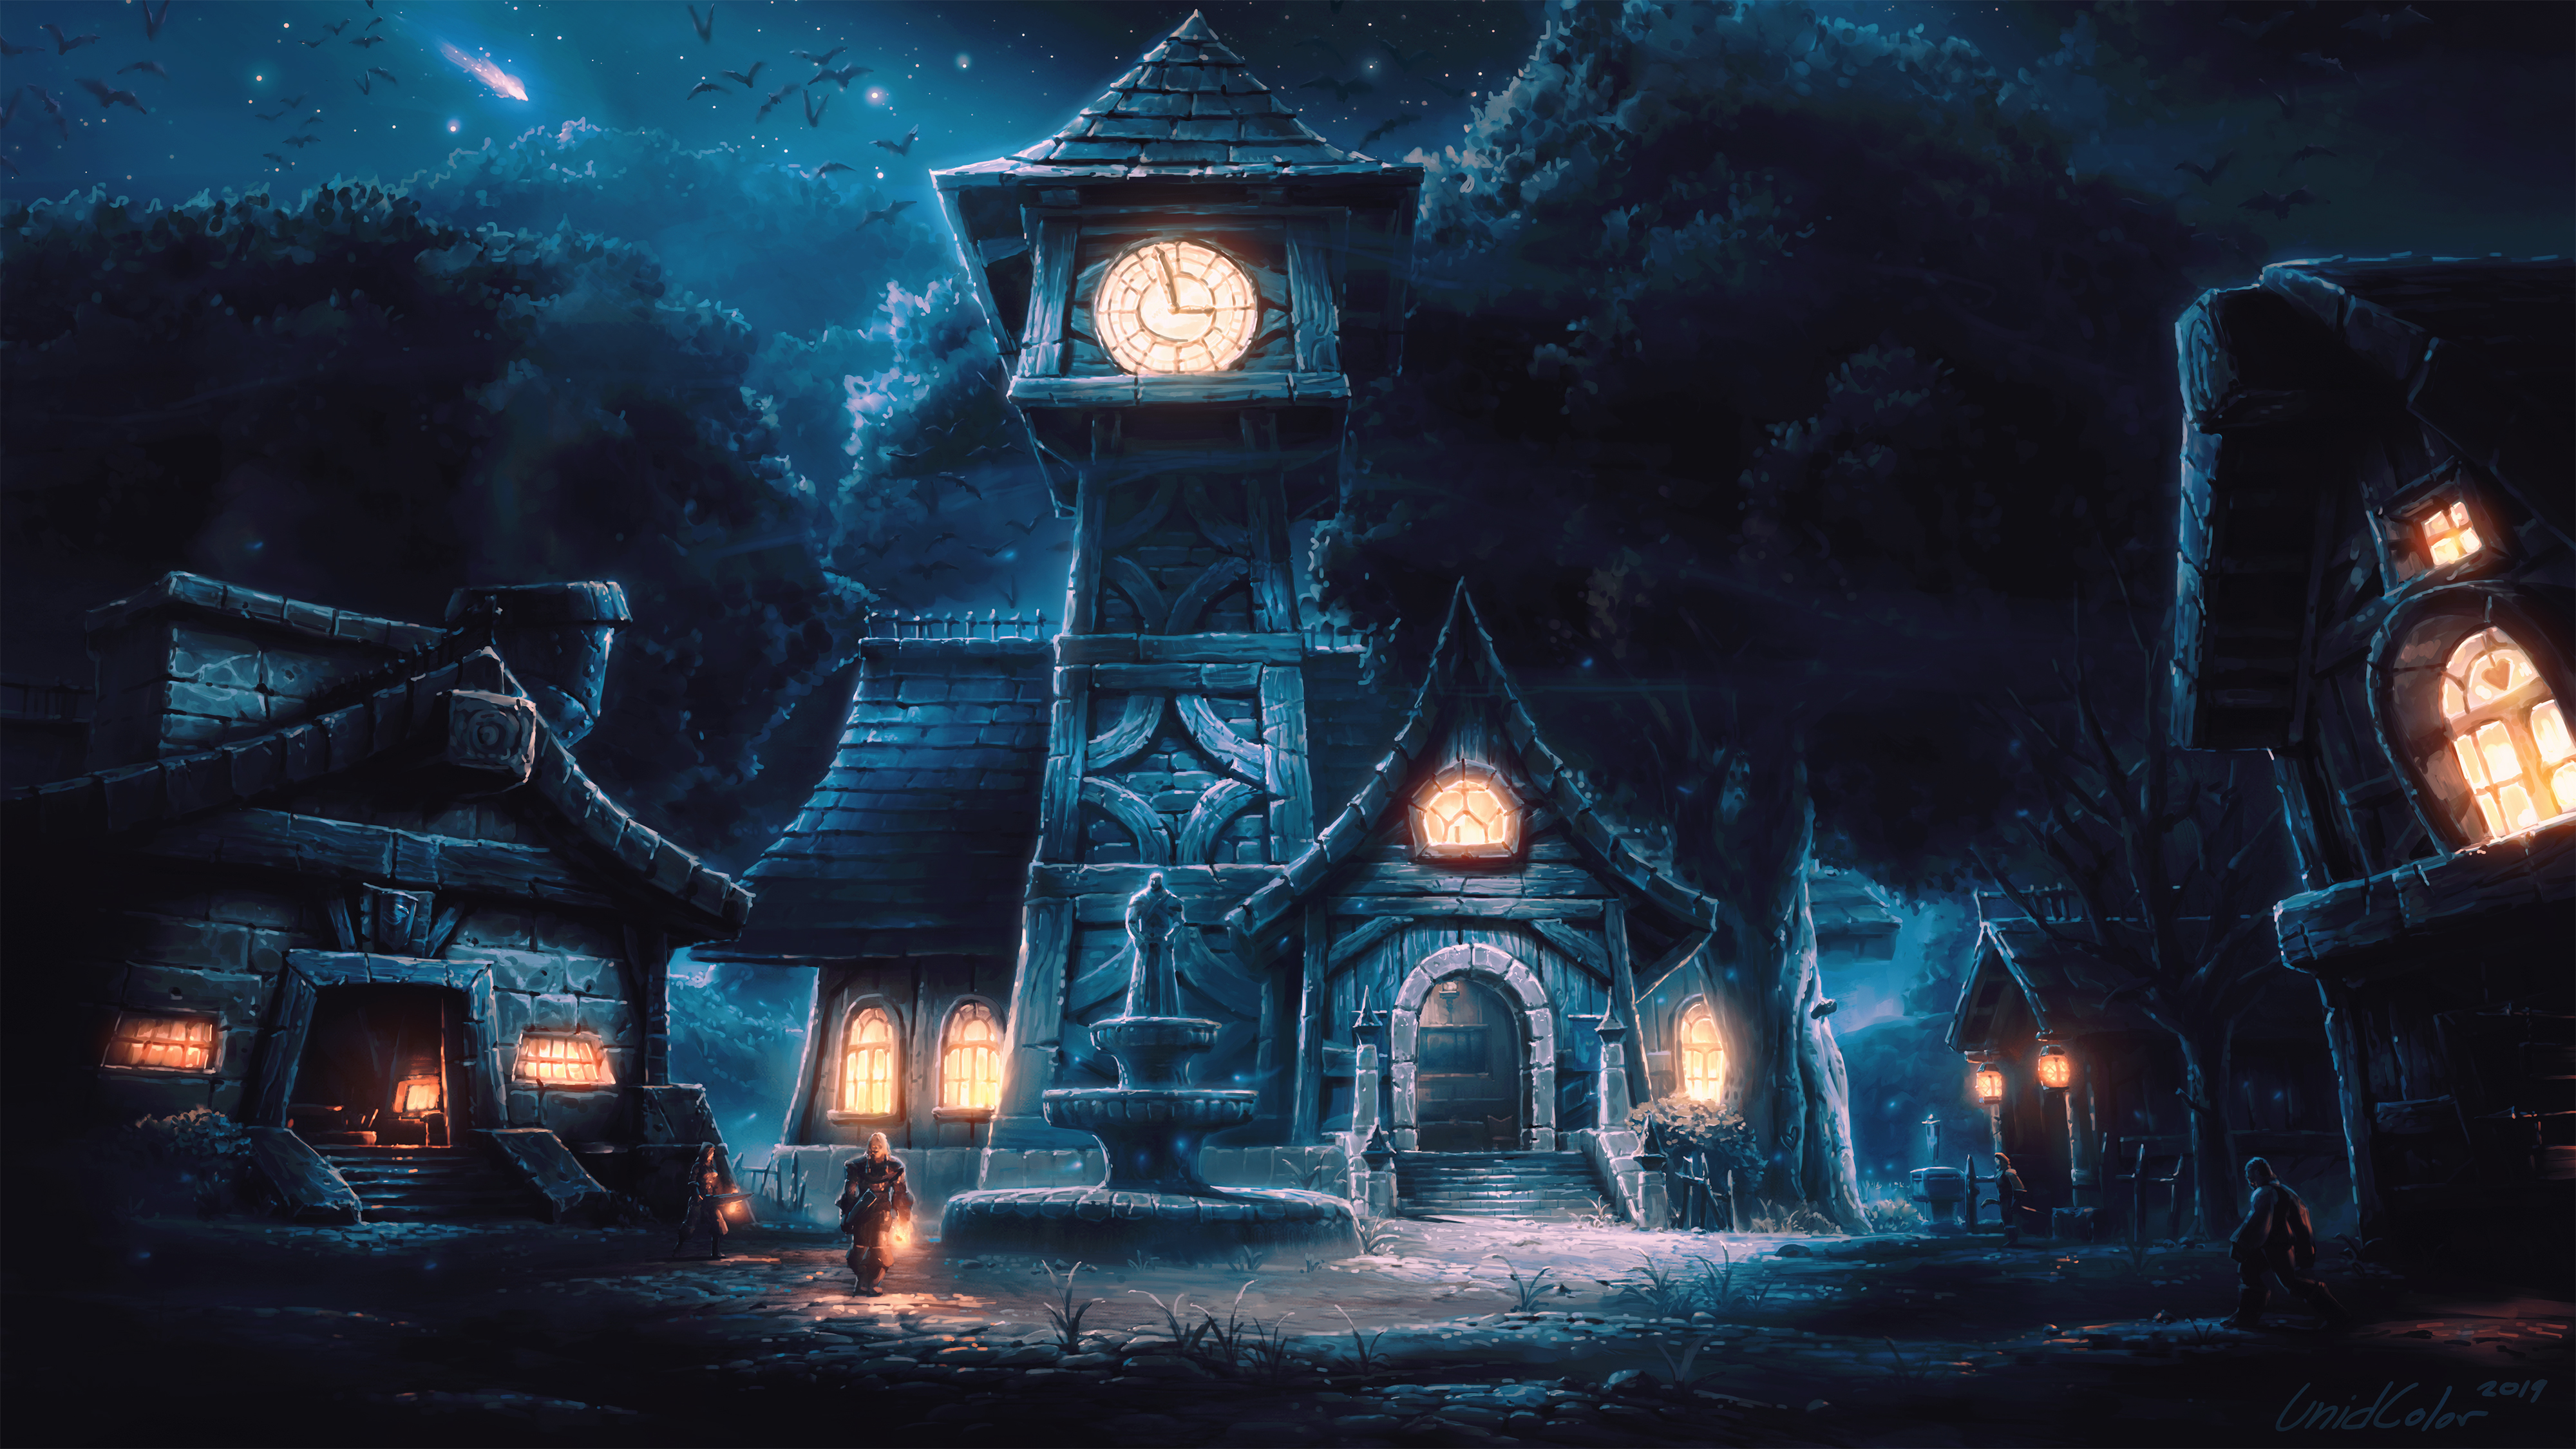 Digital Digital Art Artwork Fantasy Art Video Game Art Game Art Warcraft World Of Warcraft Landscape 4000x2250